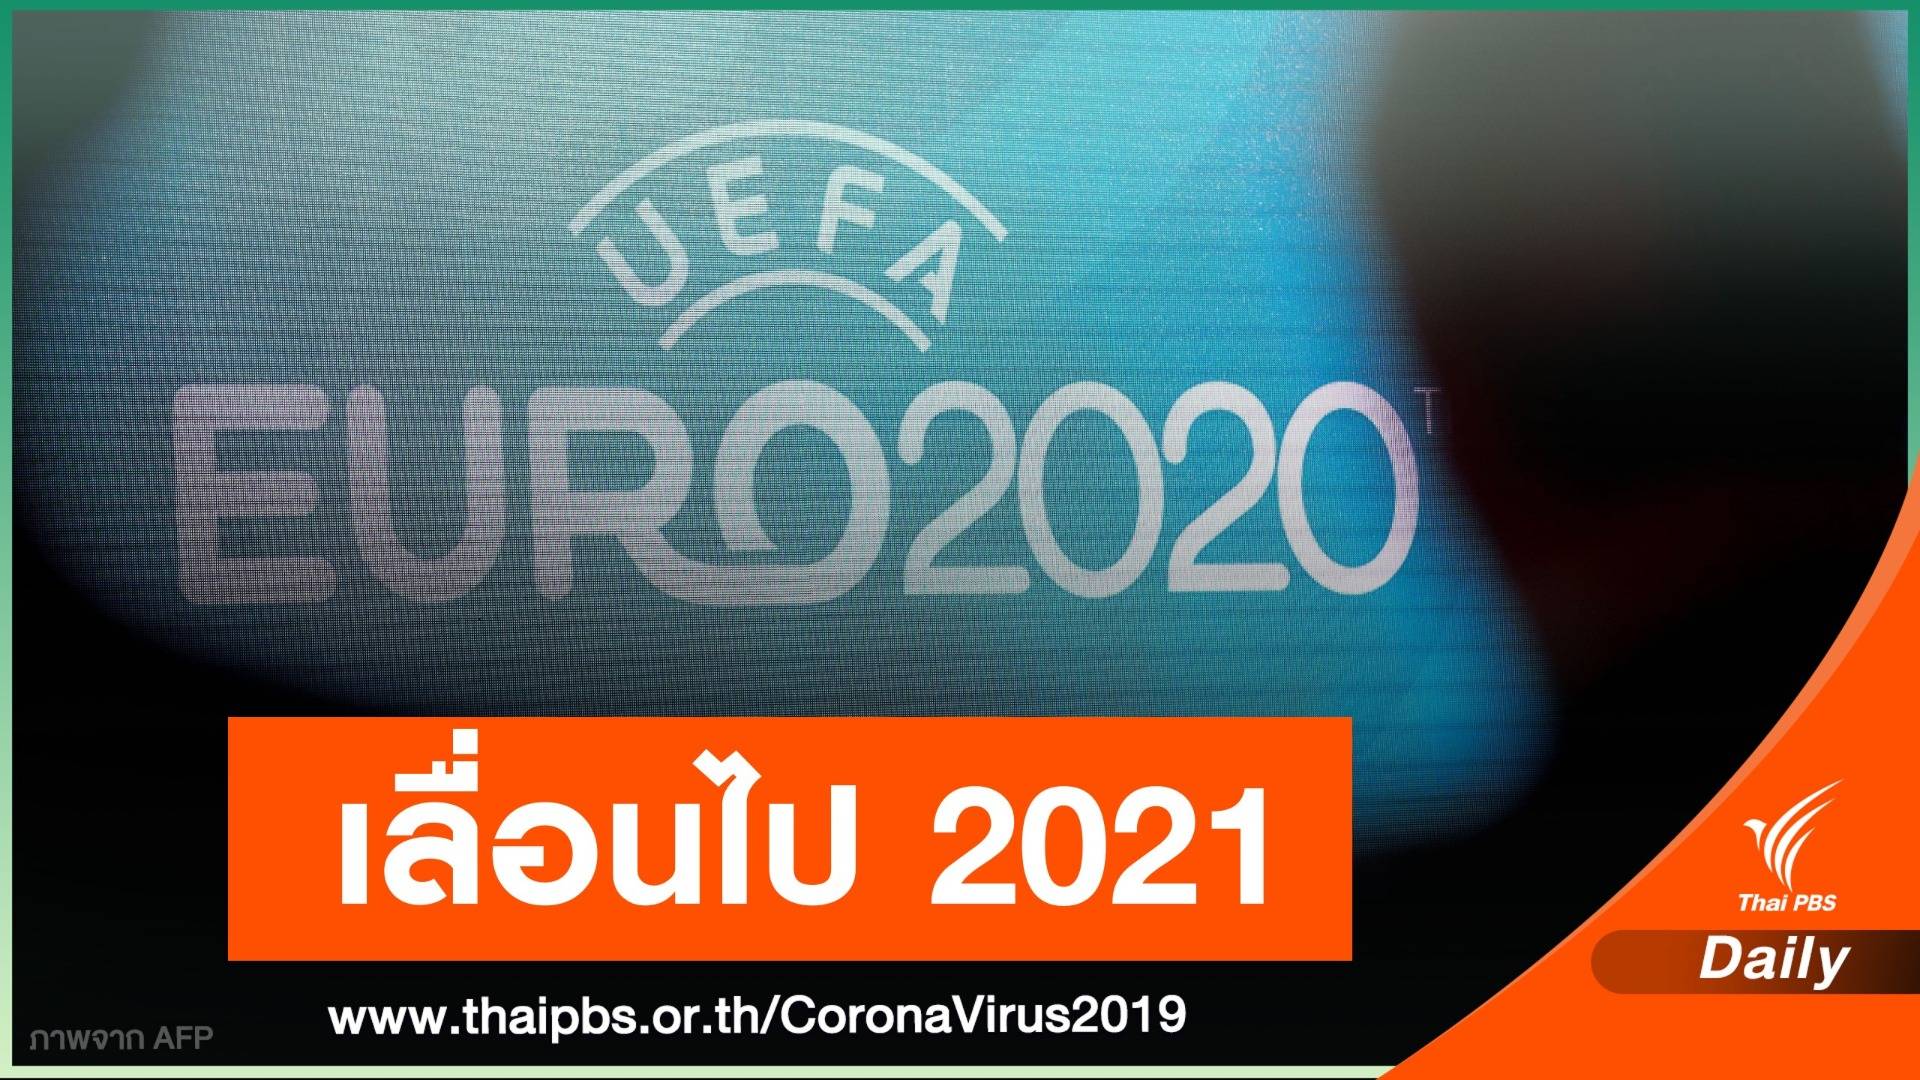 ยูฟ่าเลื่อนแข่ง "ยูโร 2020" ปีหน้า ป้อง COVID-19